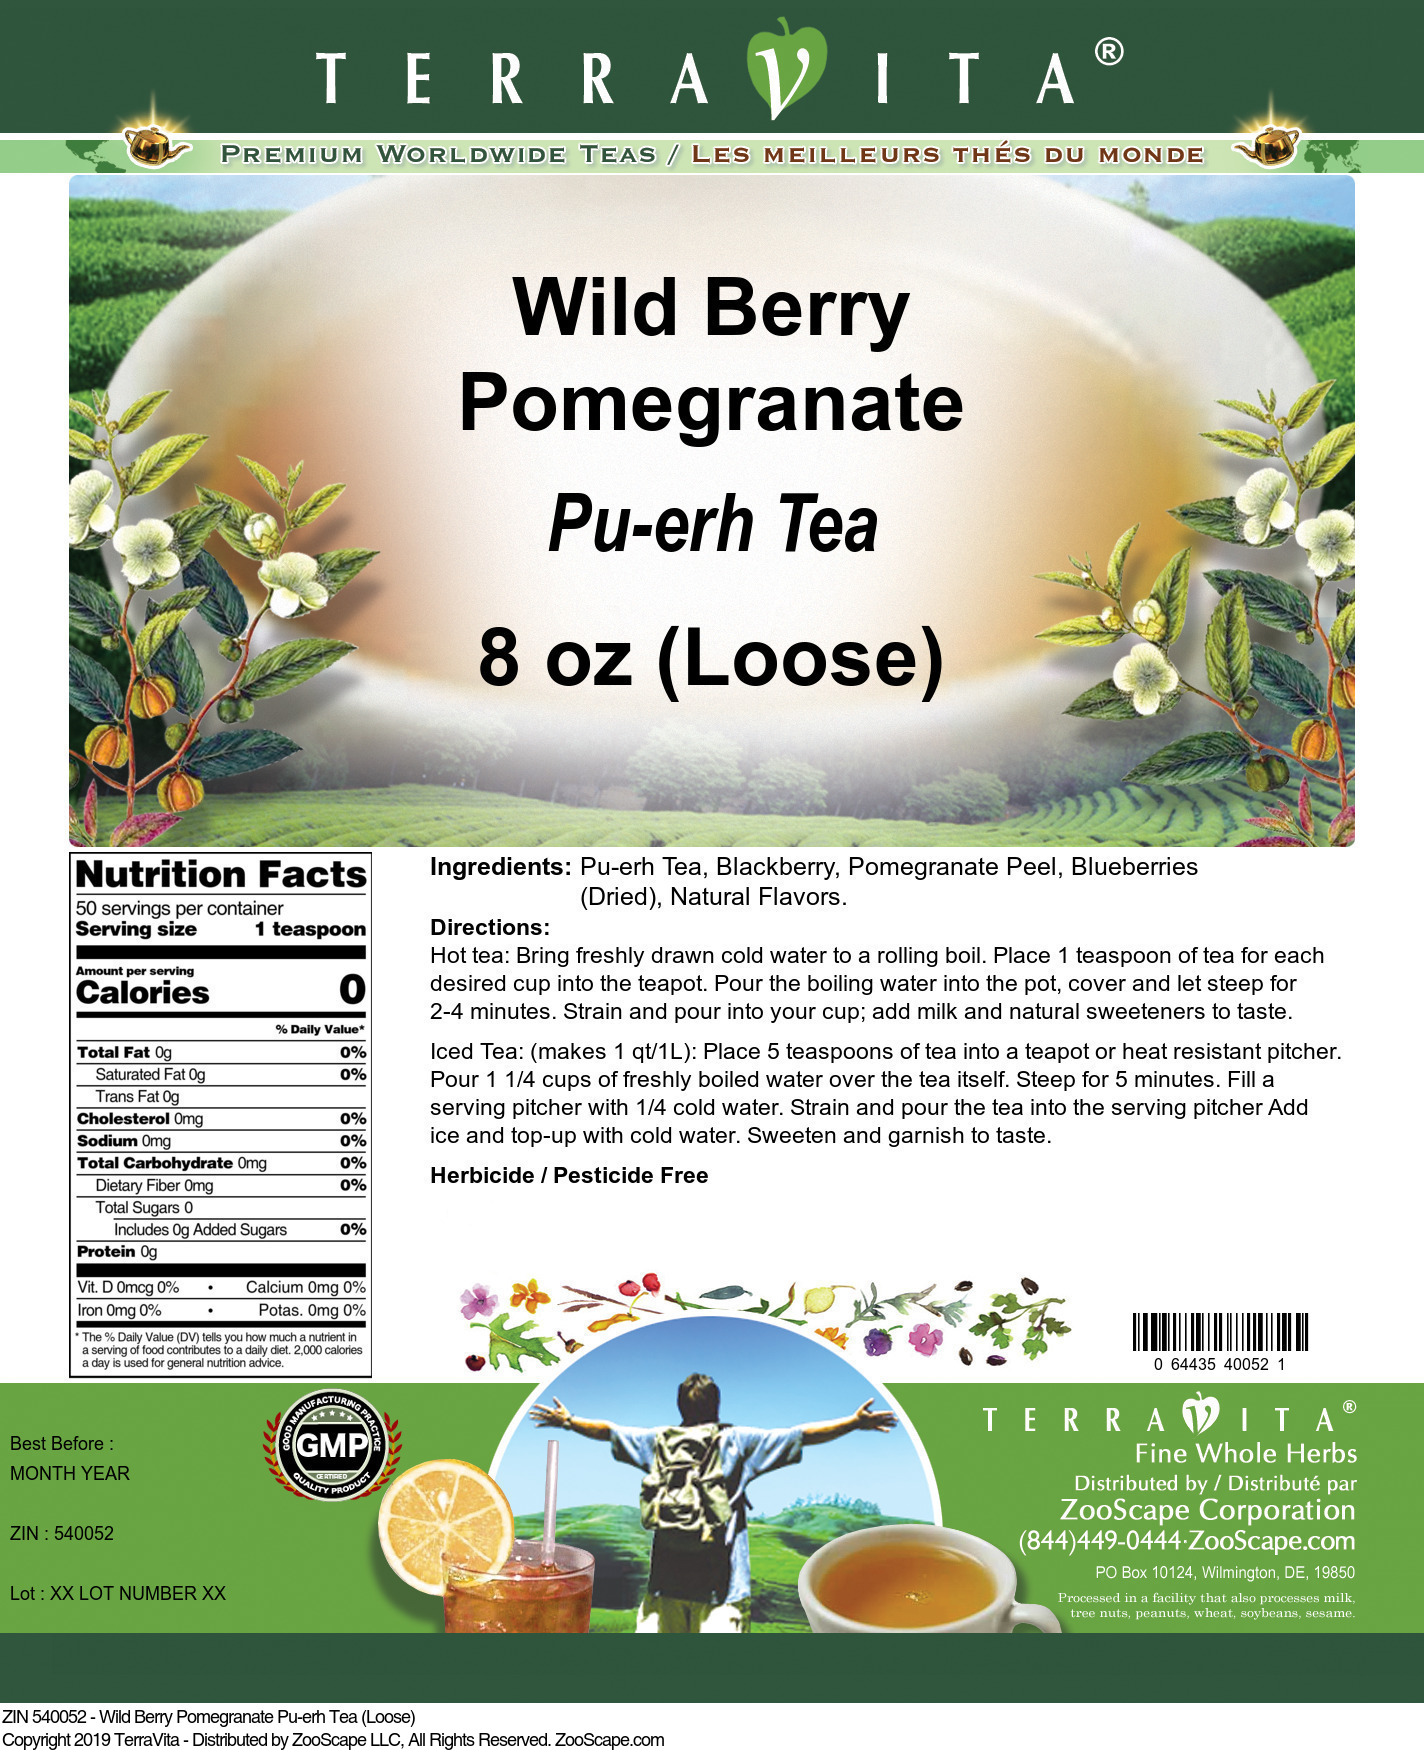 Wild Berry Pomegranate Pu-erh Tea (Loose) - Label